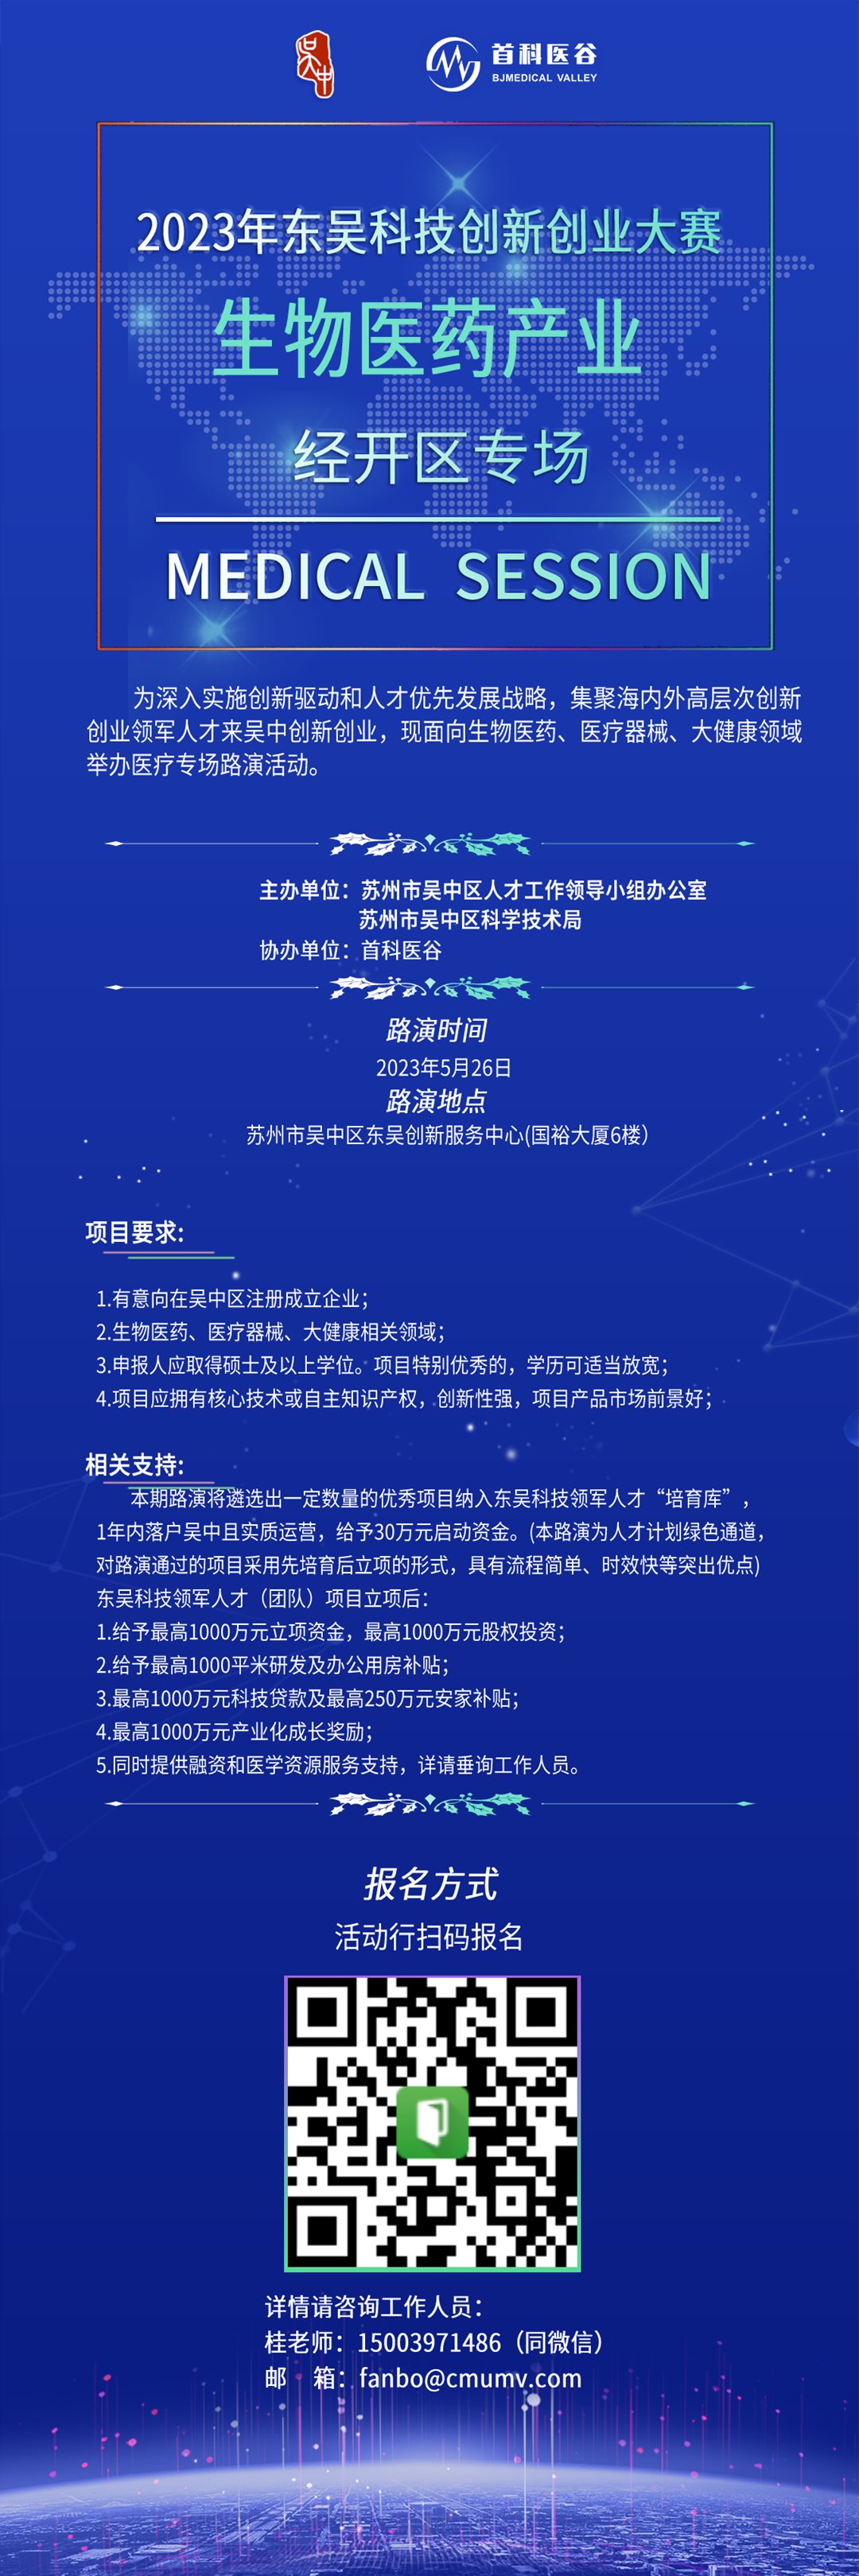 宣传海报-2023.05-东吴创新创业大赛.png